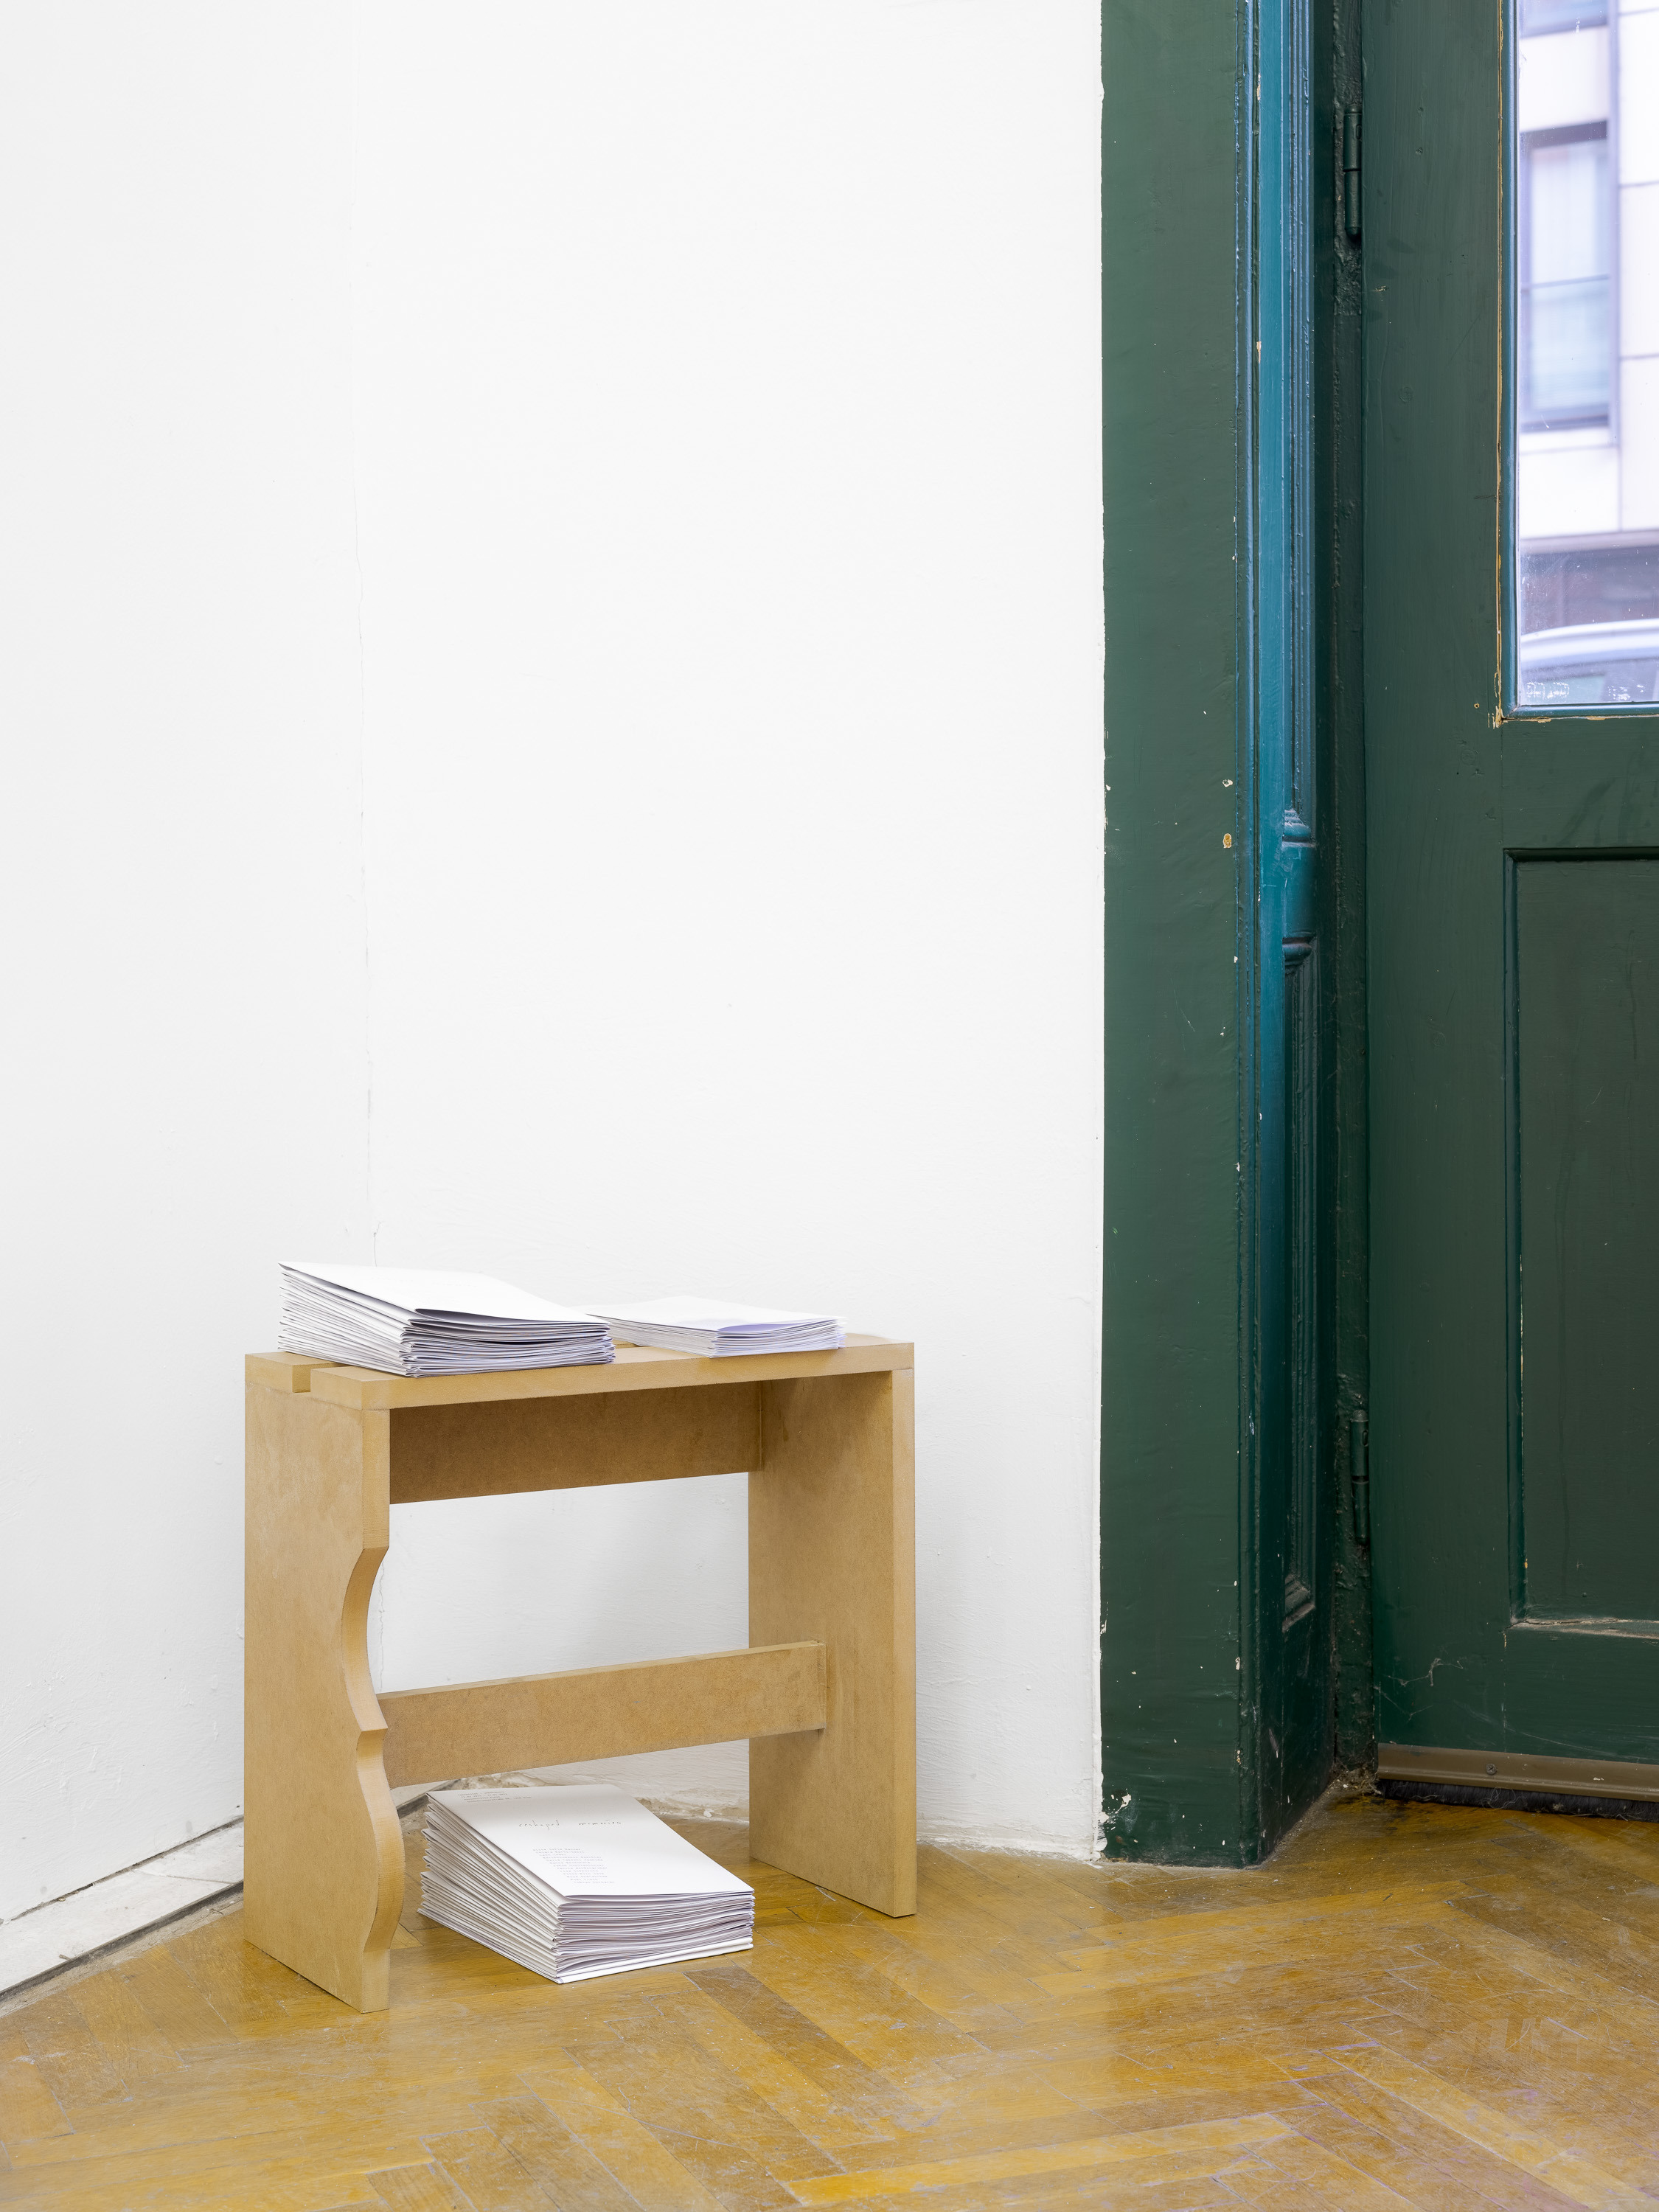 reshaped memories_stools by Lisa Sifkovits_Â© Tobias Ehrhardt